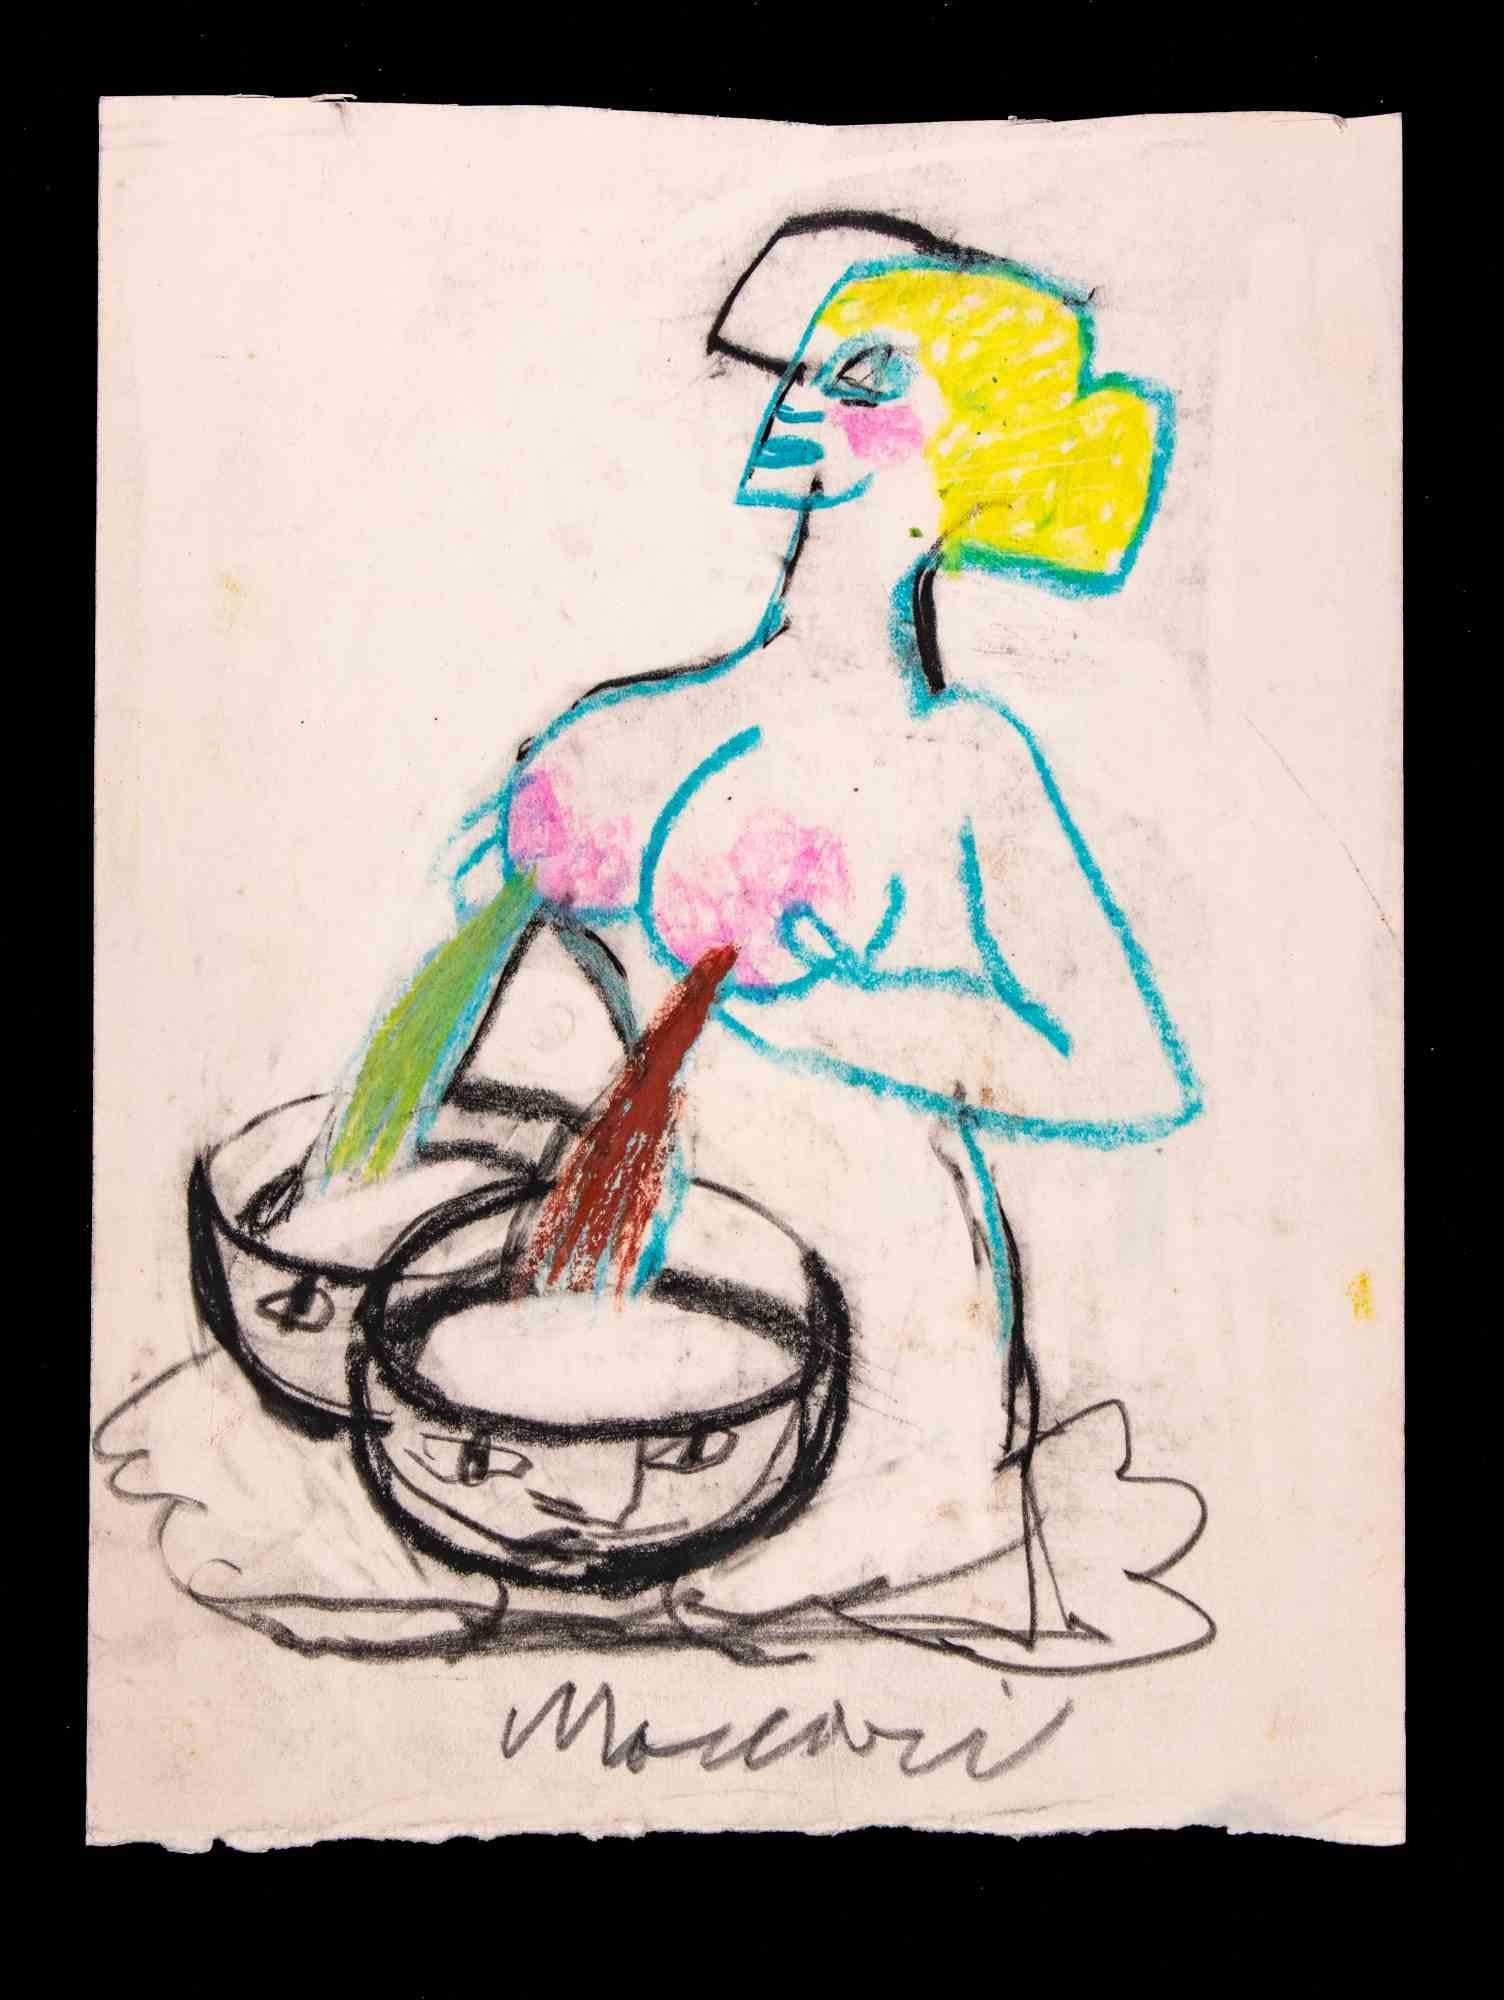 Die Milchstraße ist eine Zeichnung mit Kohle und Pastell von Mino Maccari  (1924-1989) im Jahr 1975.

Handsigniert am unteren Rand.

Guter Zustand auf wenig Papier.

Mino Maccari (Siena, 1924-Rom, 16. Juni 1989) war ein italienischer Schriftsteller,